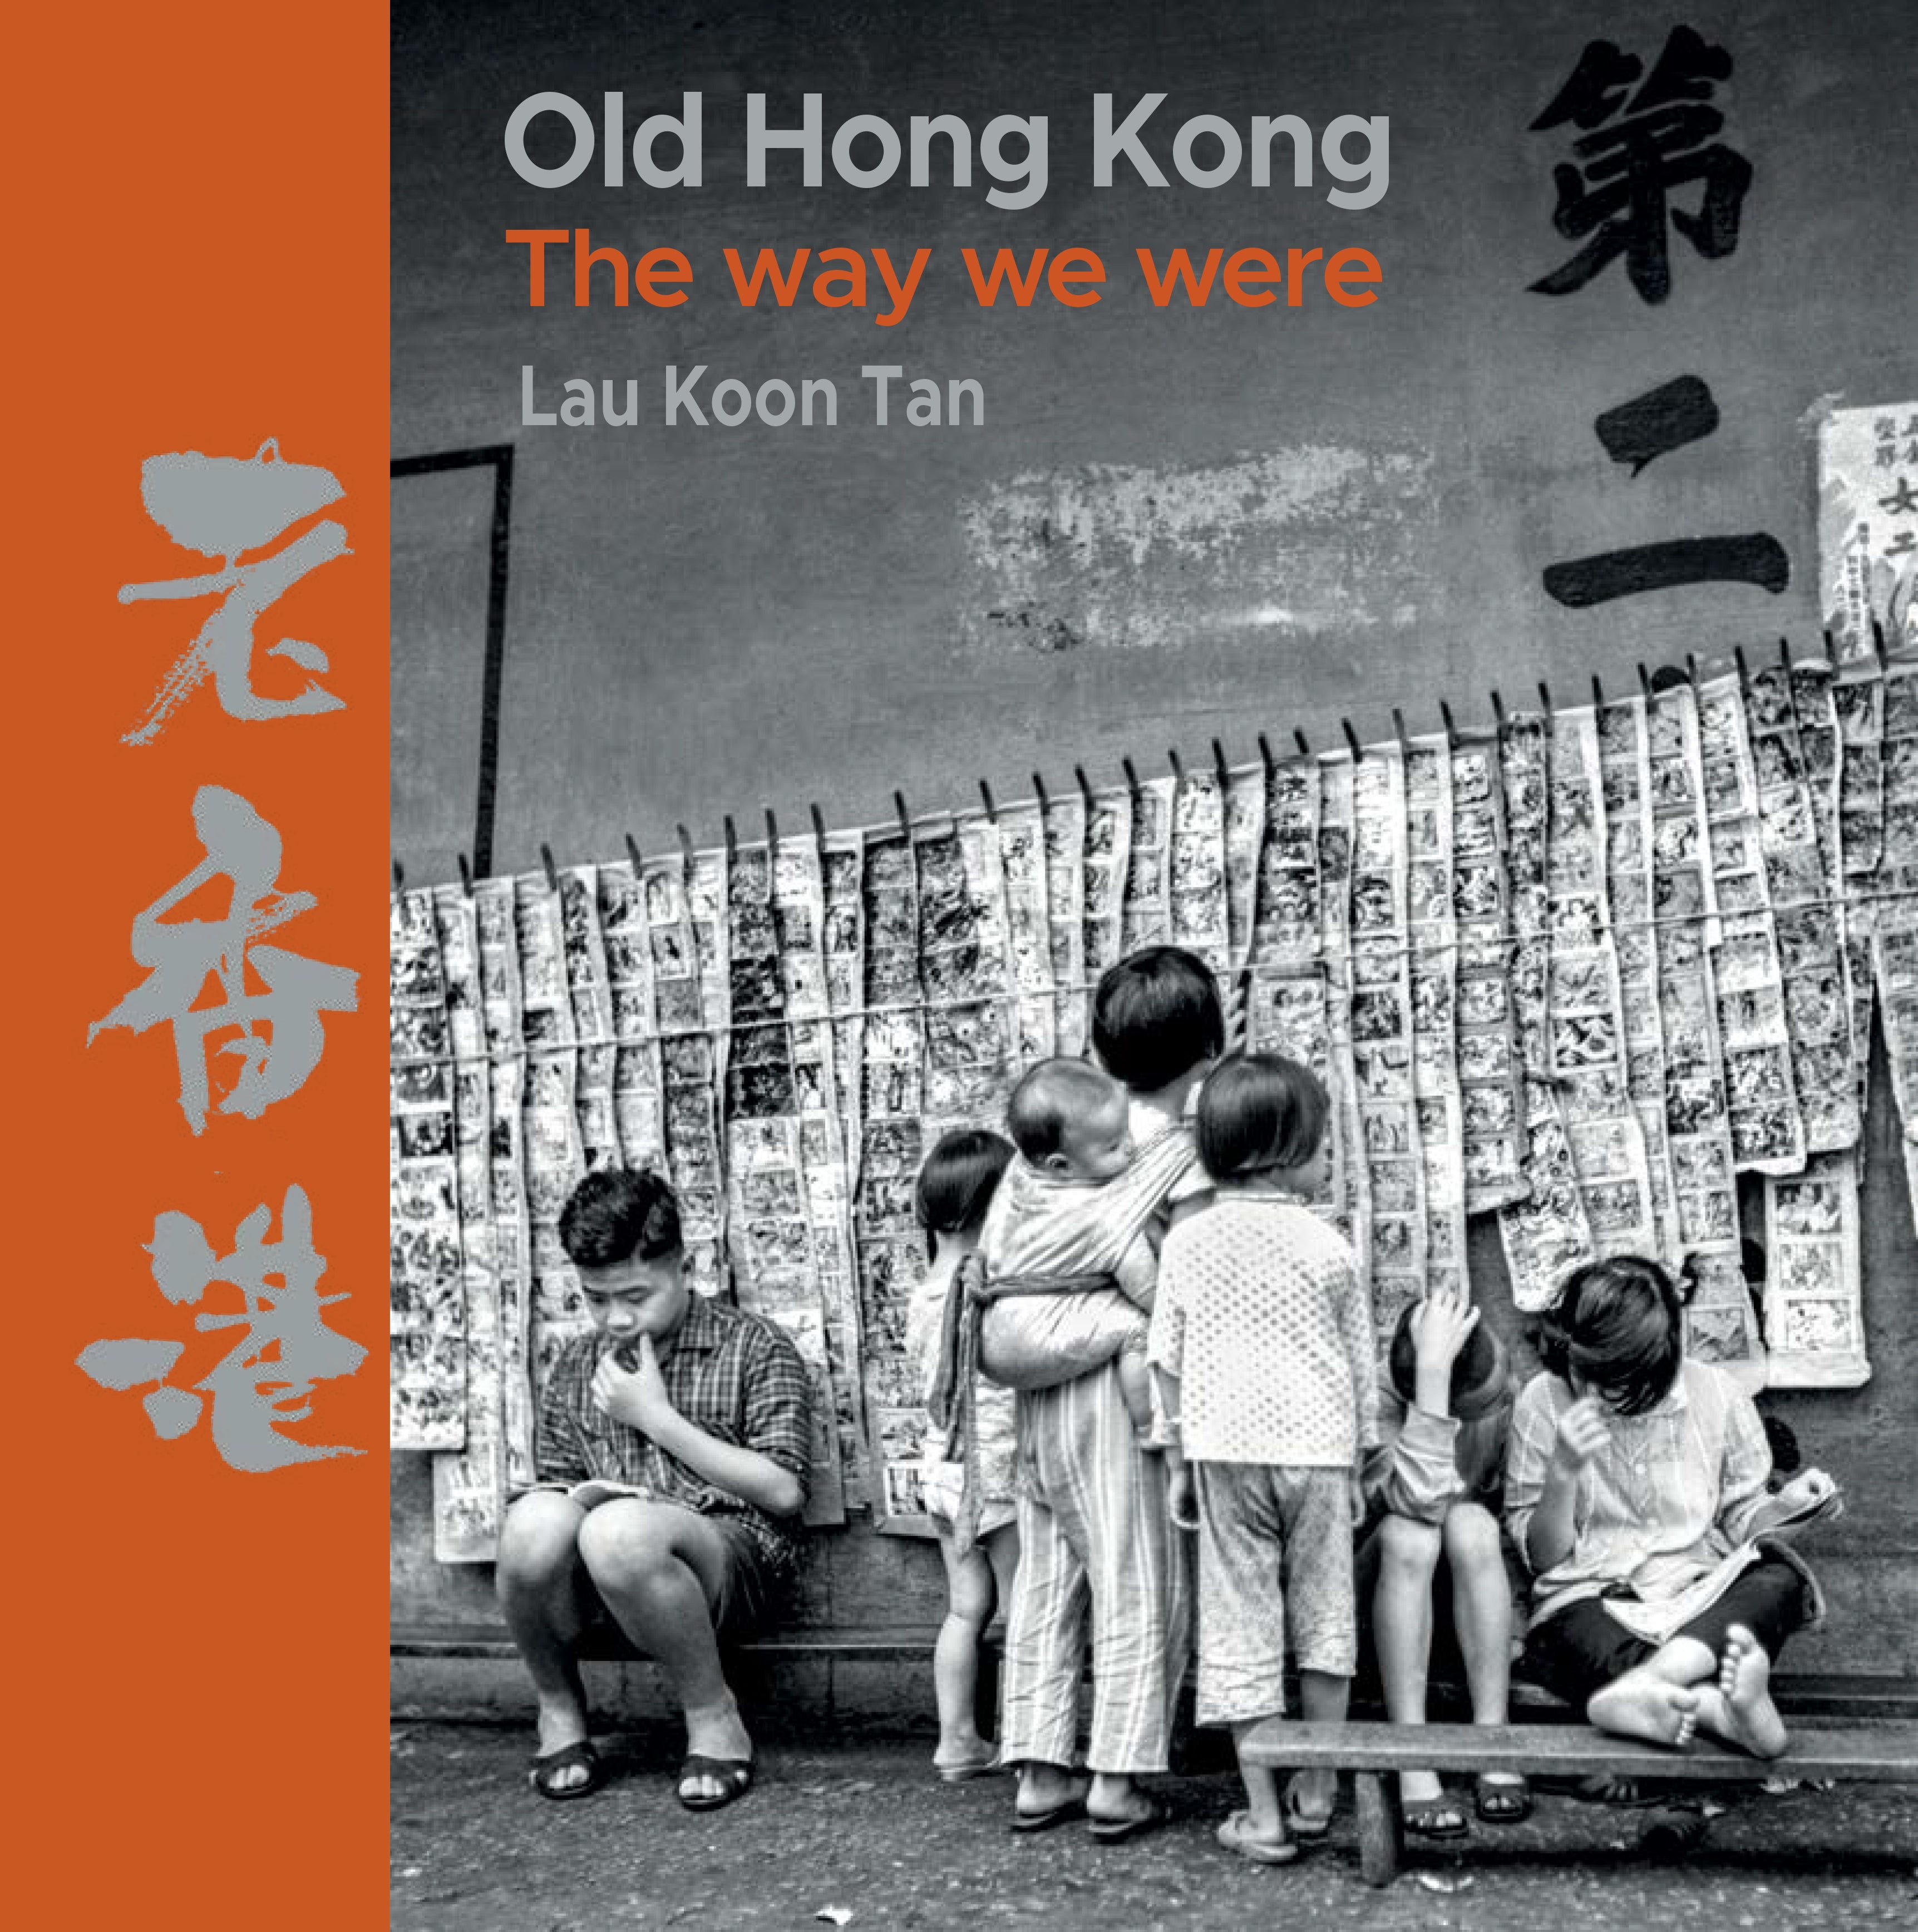 Old Hong Kong - The Way We Were&#39; book 劉冠騰老香港攝影書